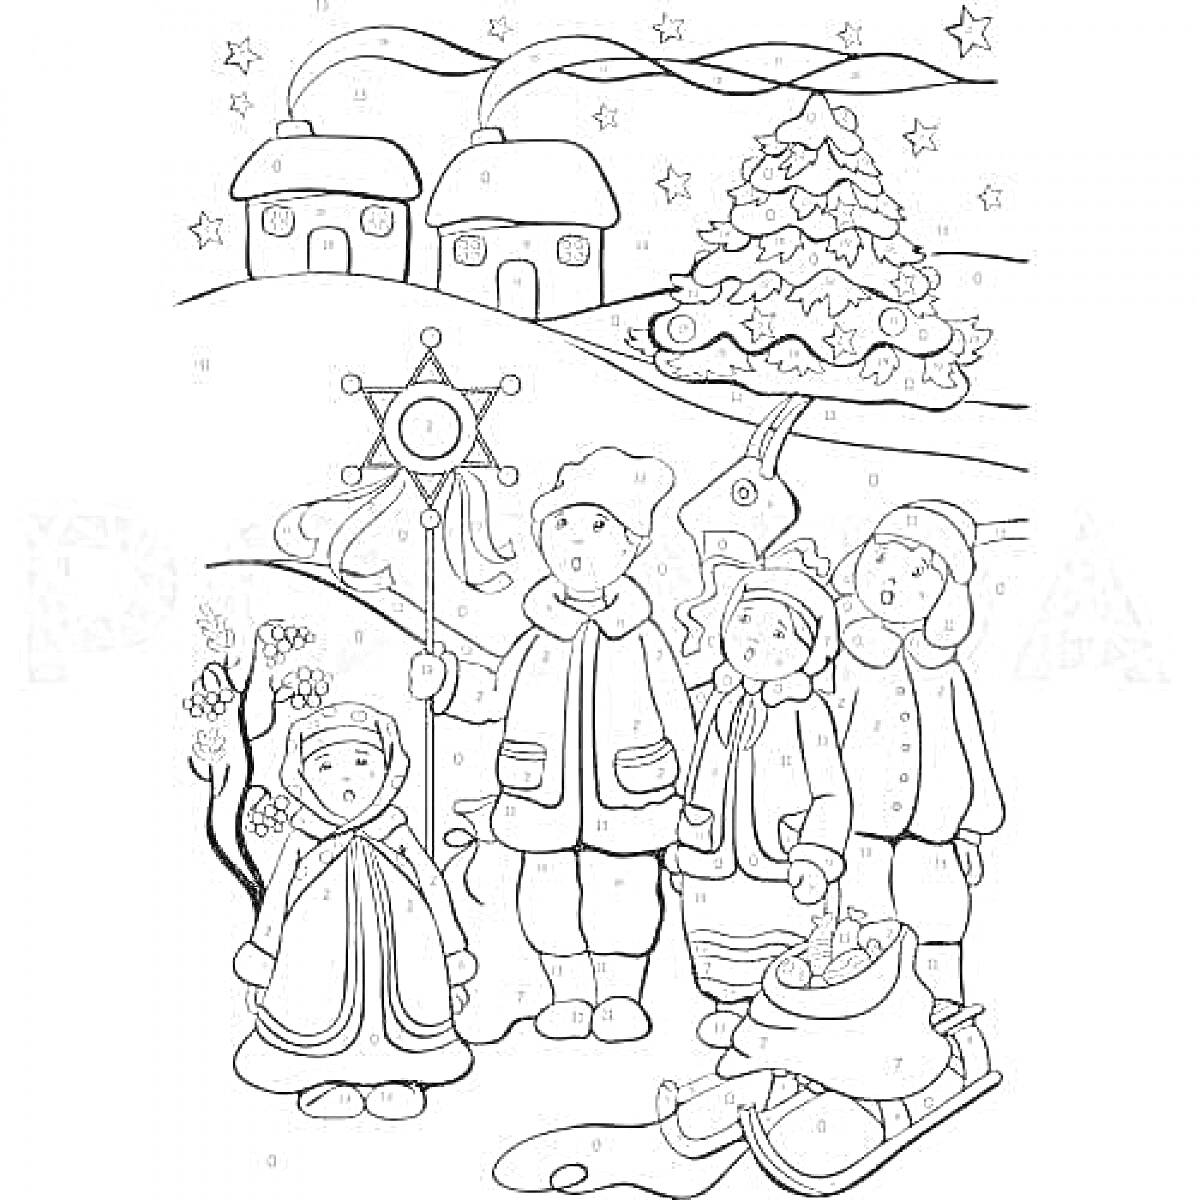 Хоровод детей на святках с рождественским деревом, санками и домами